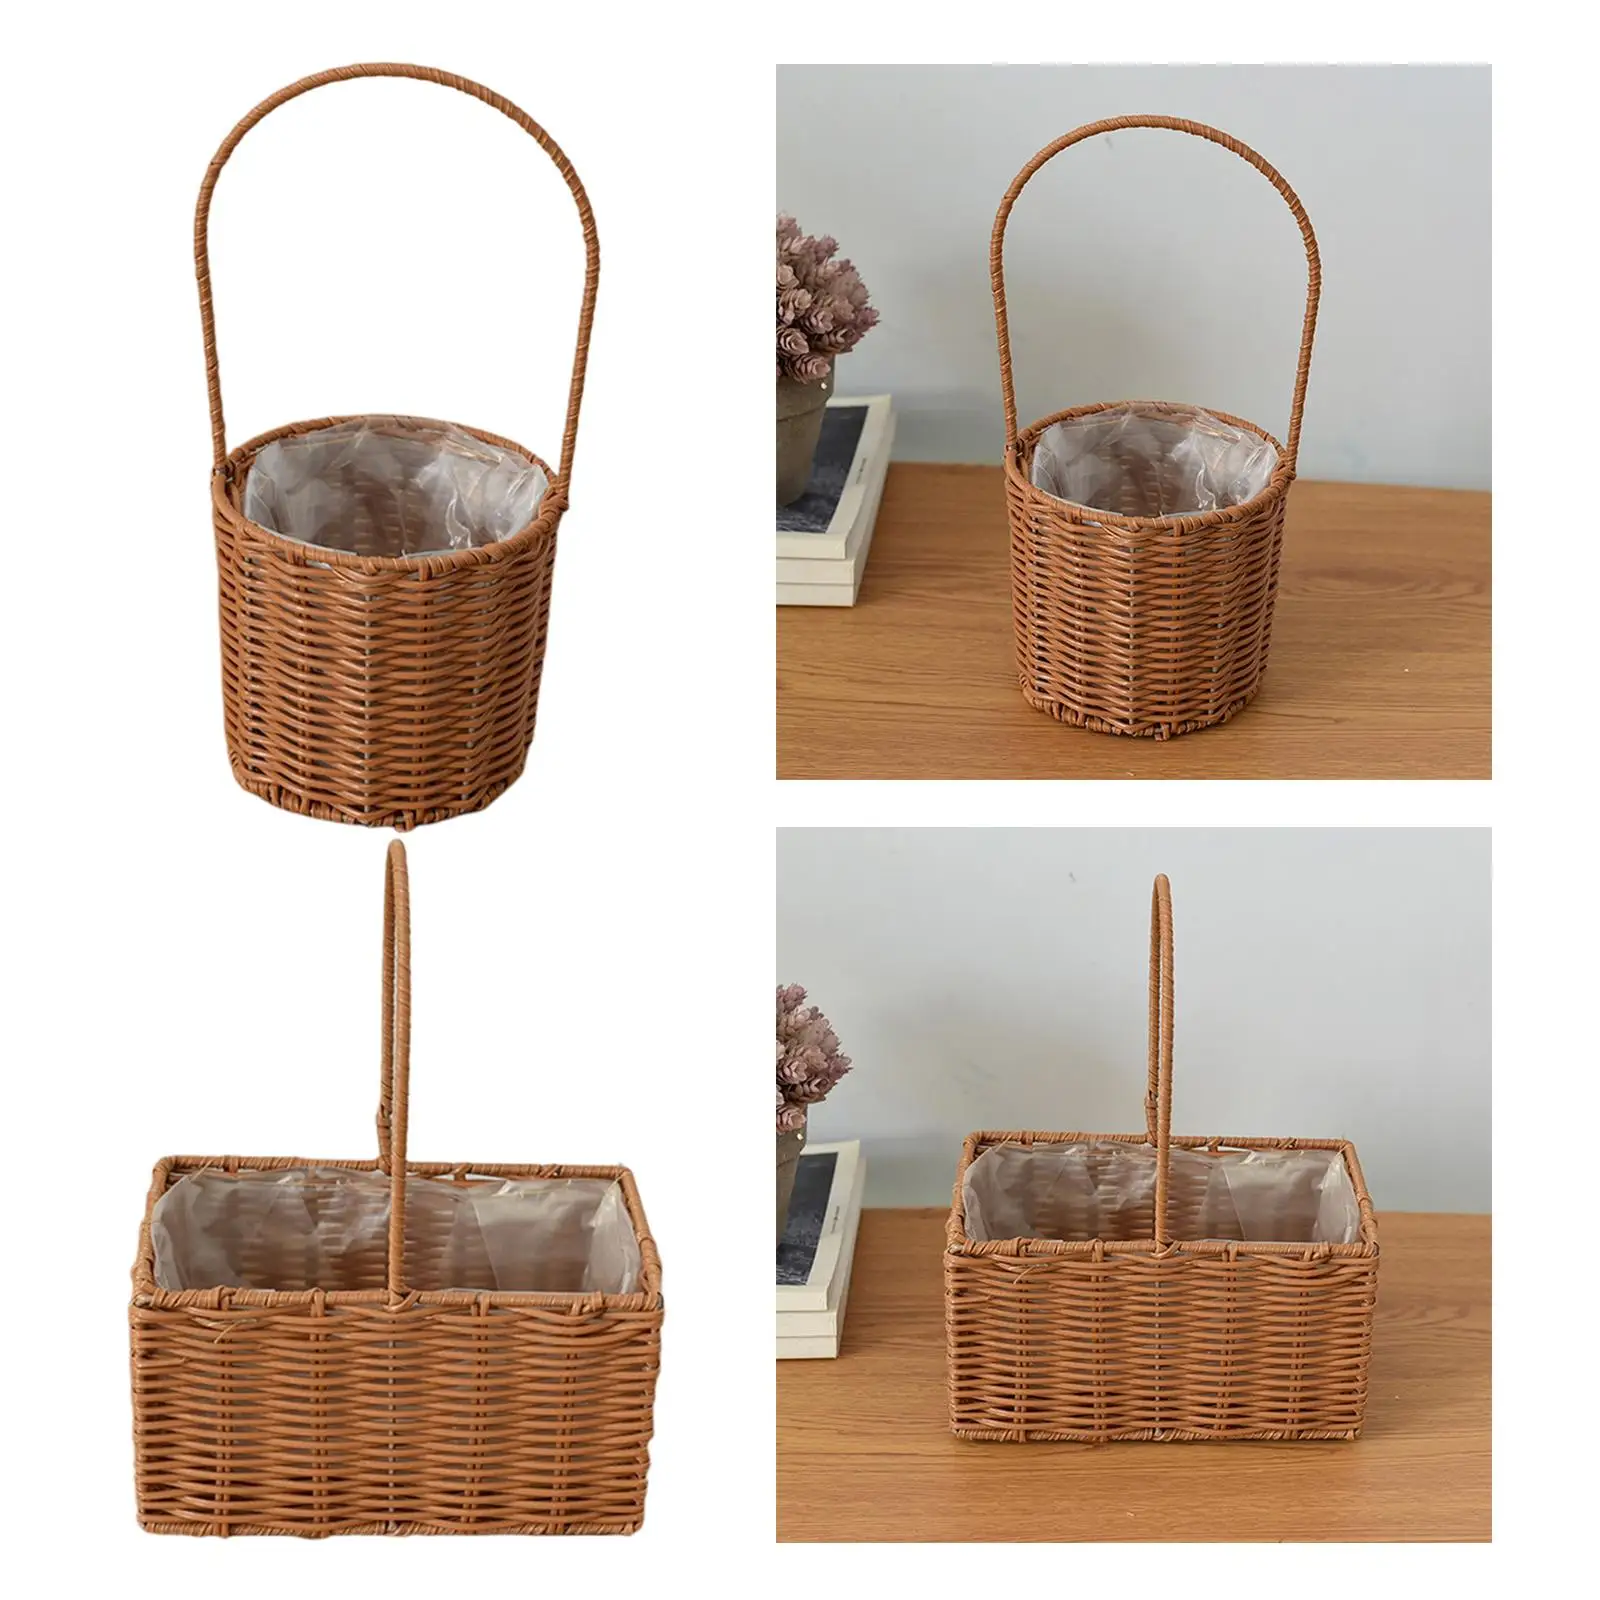 Rattan Flower Basket Vegetables Fruits Holder with Handle Handmade Wicker Basket for Living Room Home Decor